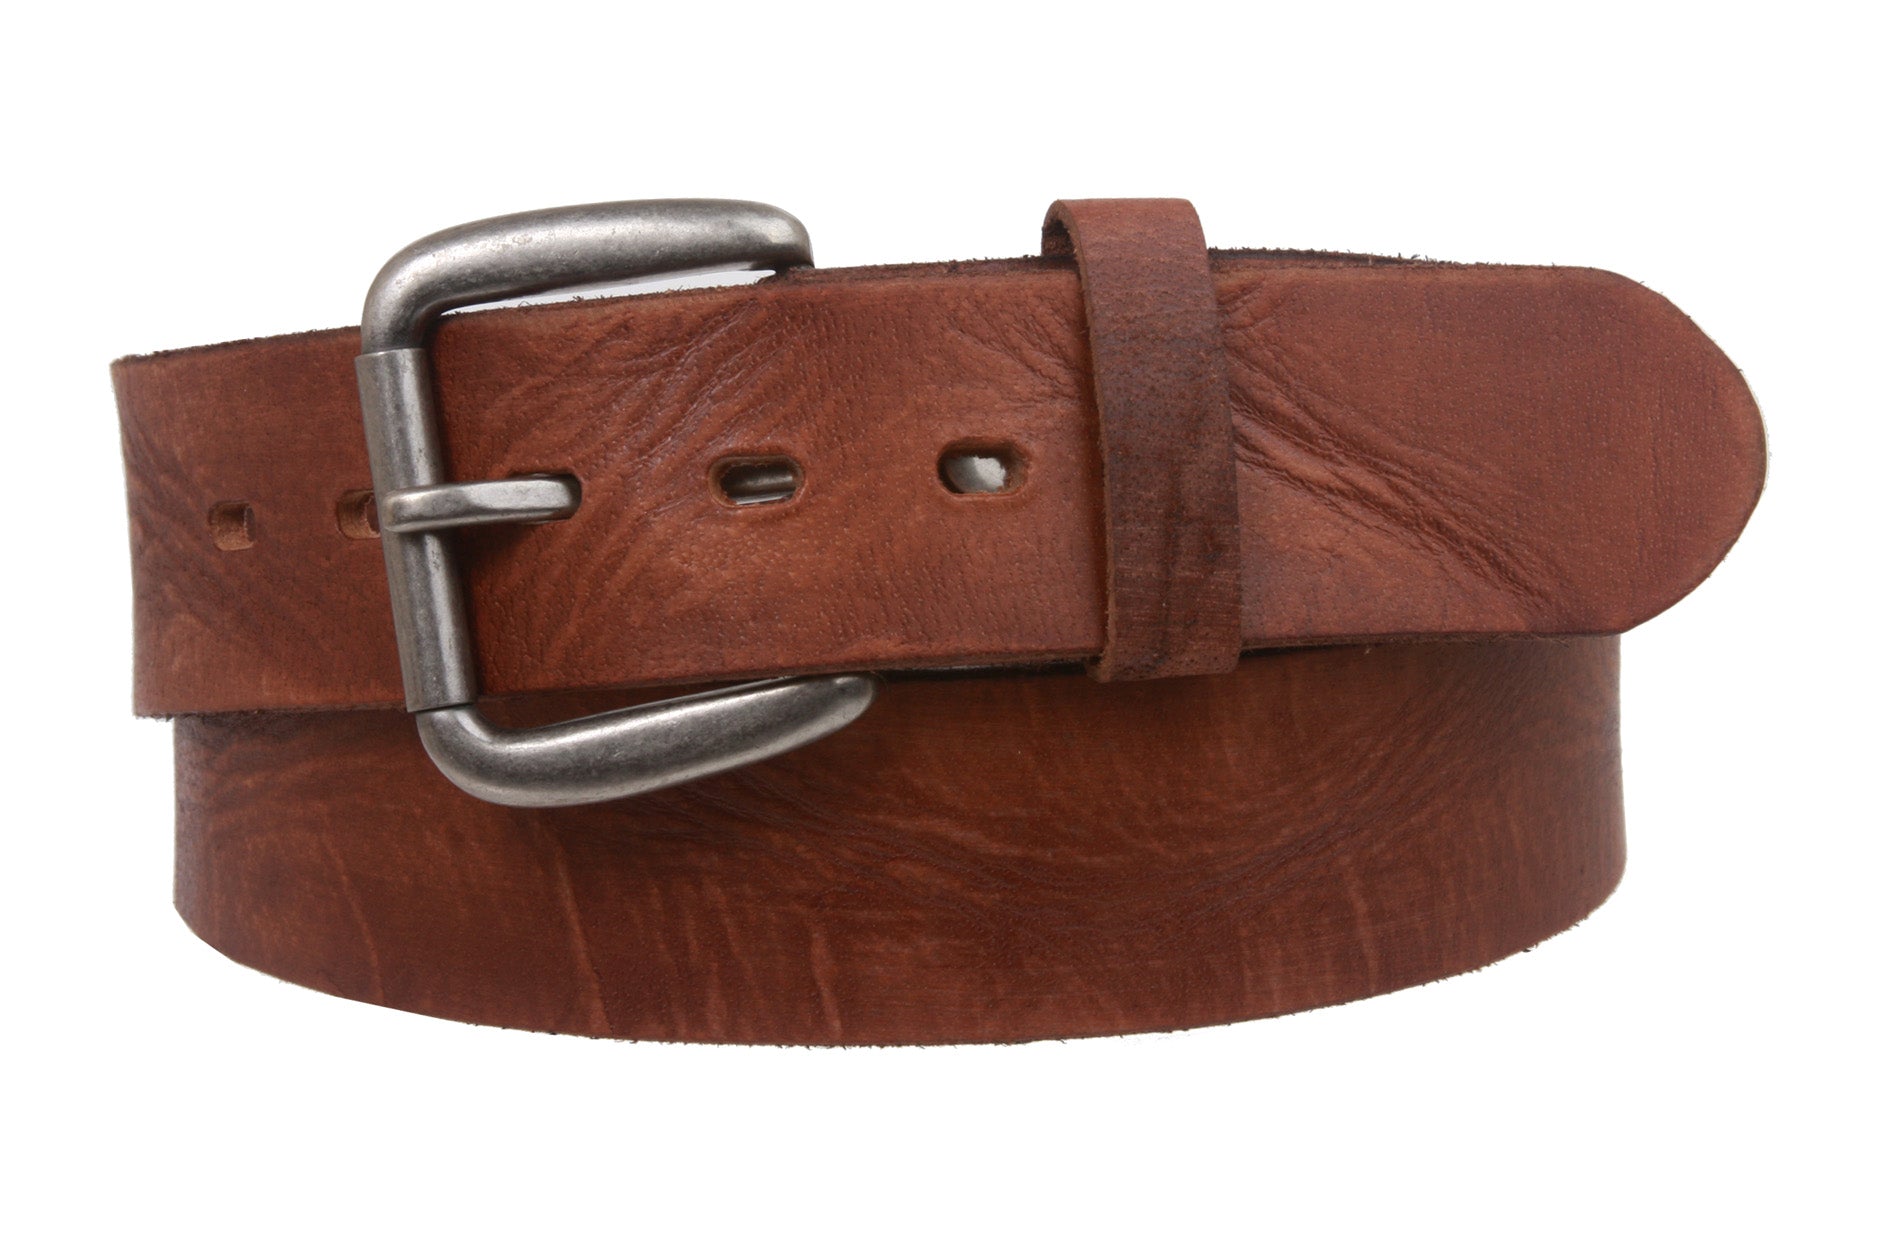 Snap On Oil Tanned Top Grain Genuine Vintage Retro Western Cowhide Leather Belt